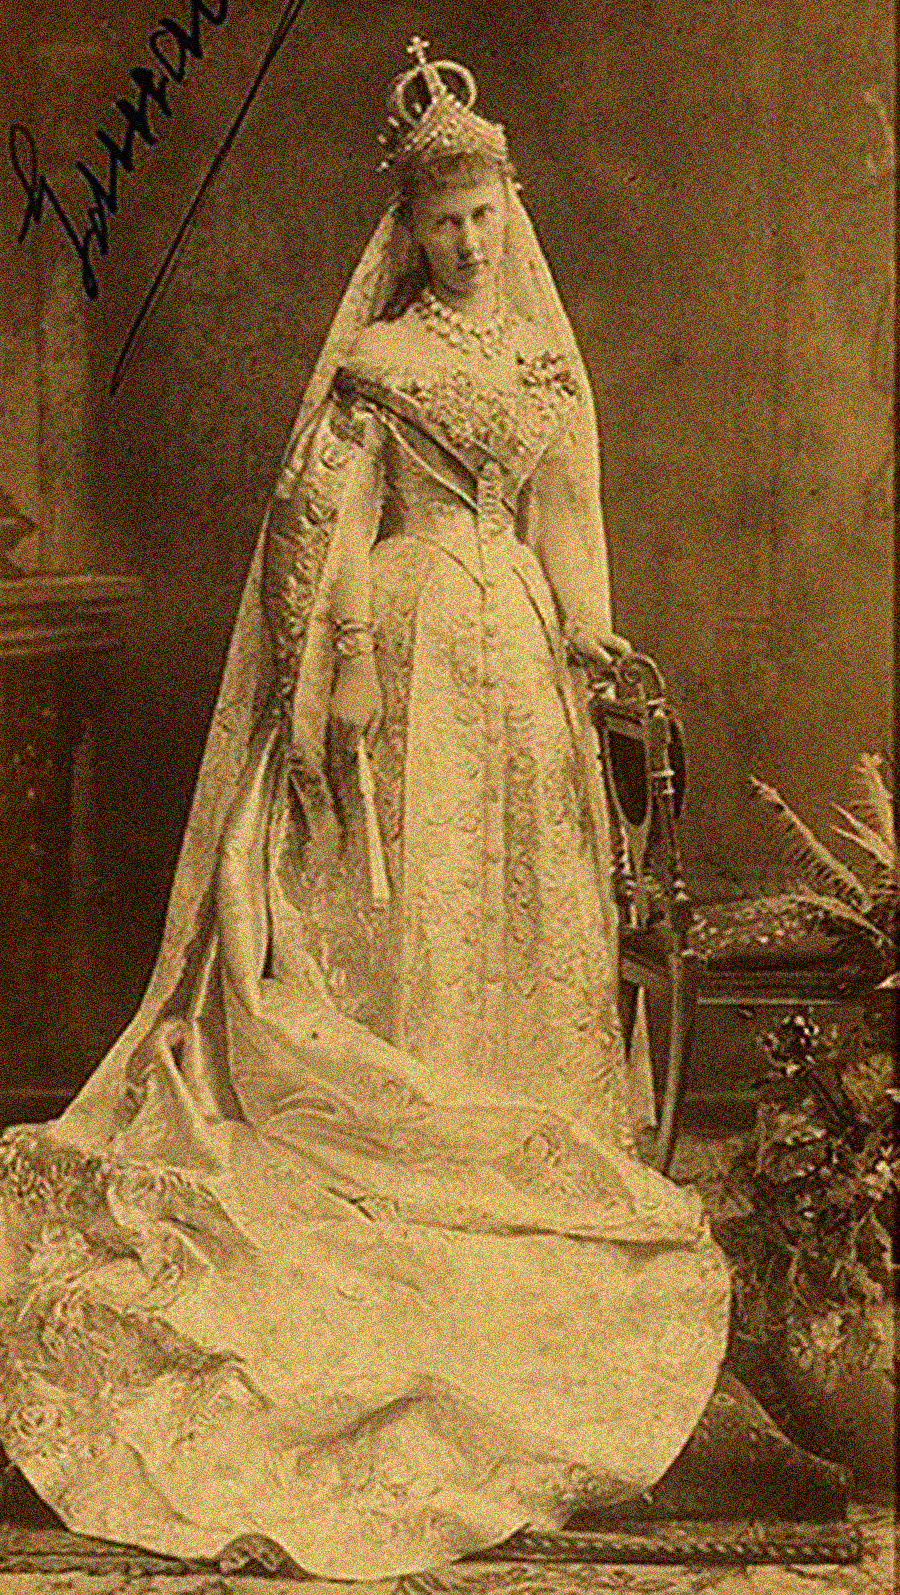 Großherzogin Elizabeth Mawrikijewna, Enkelin von Nikolaus I., im Hochzeitskleid, 1884.
